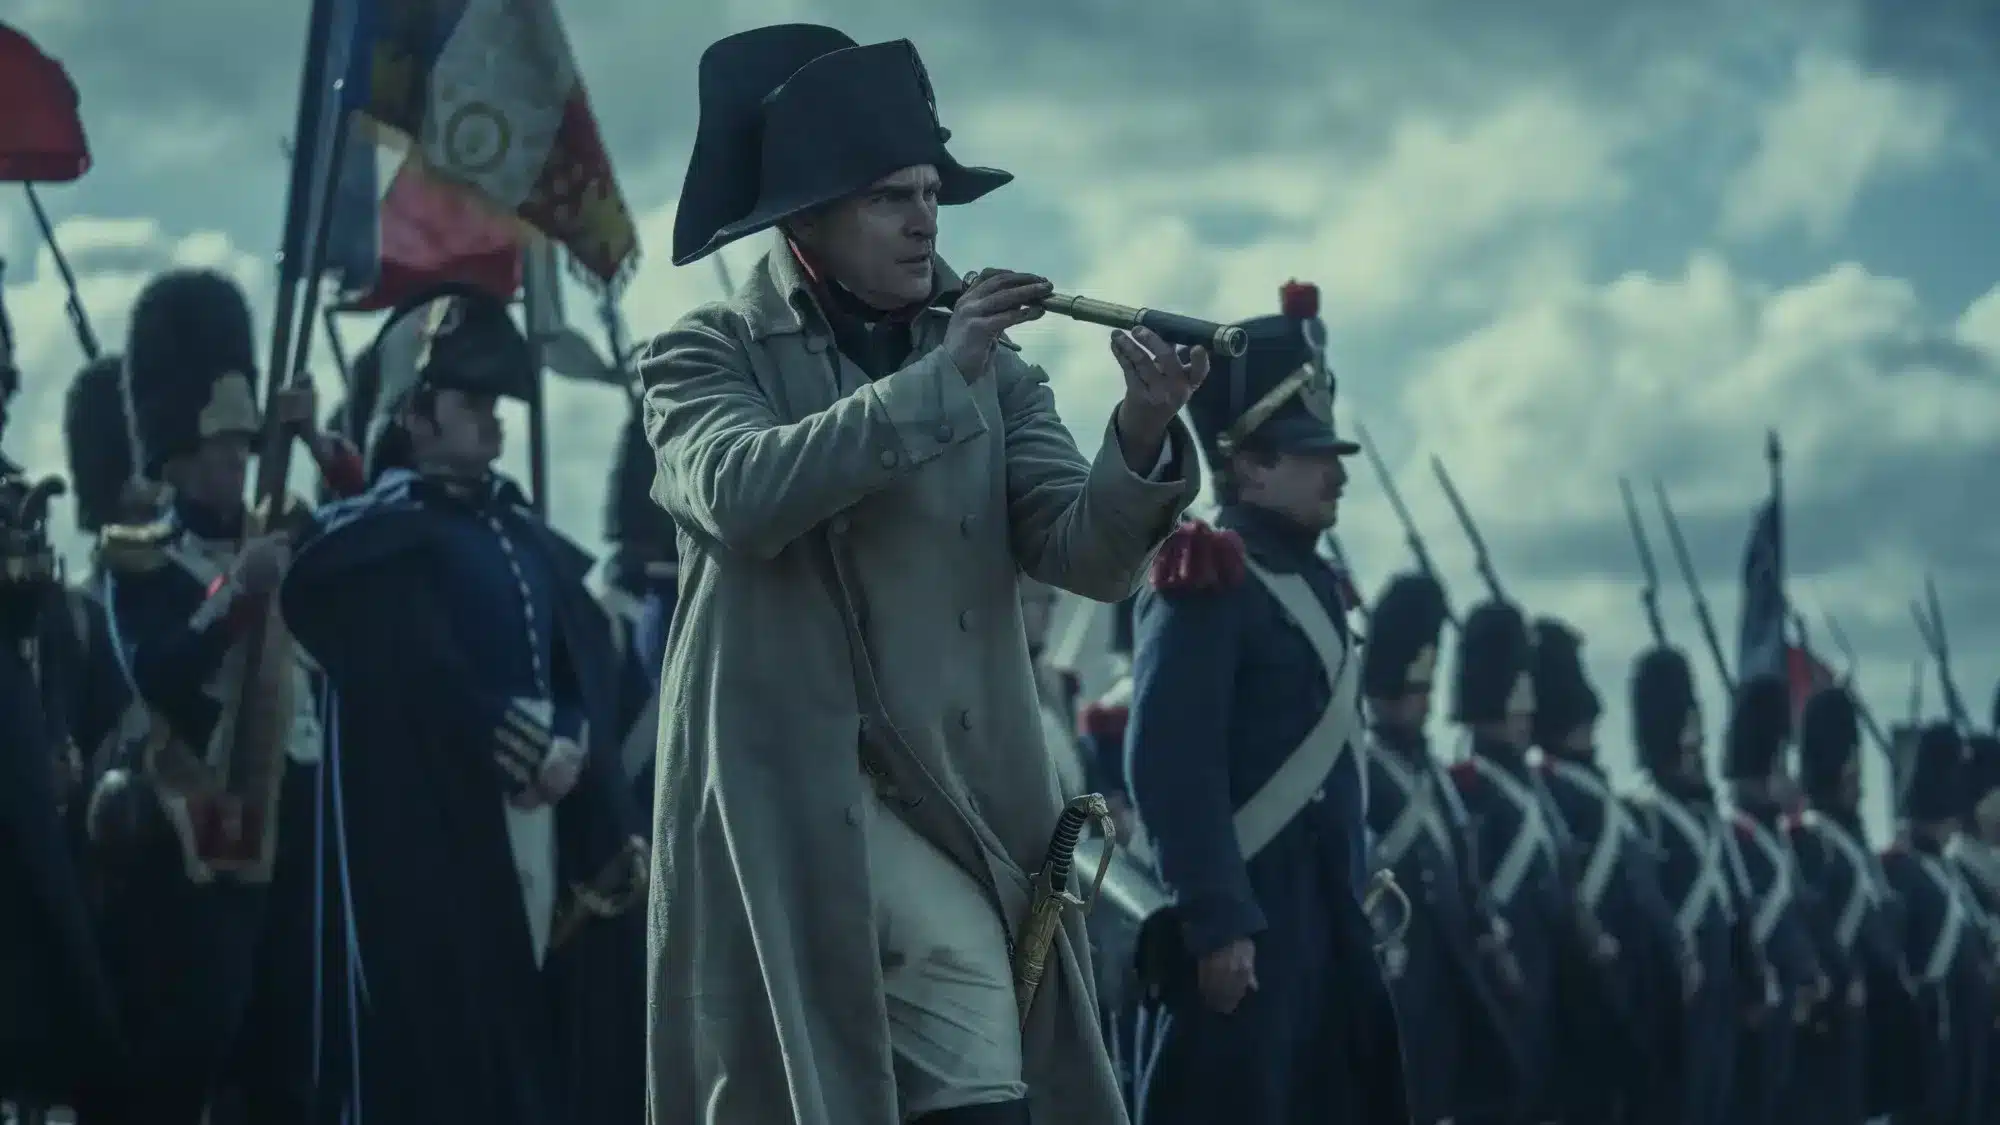 Crítica: Napoleón de Ridley Scott – Mucha épica, no tanta alma